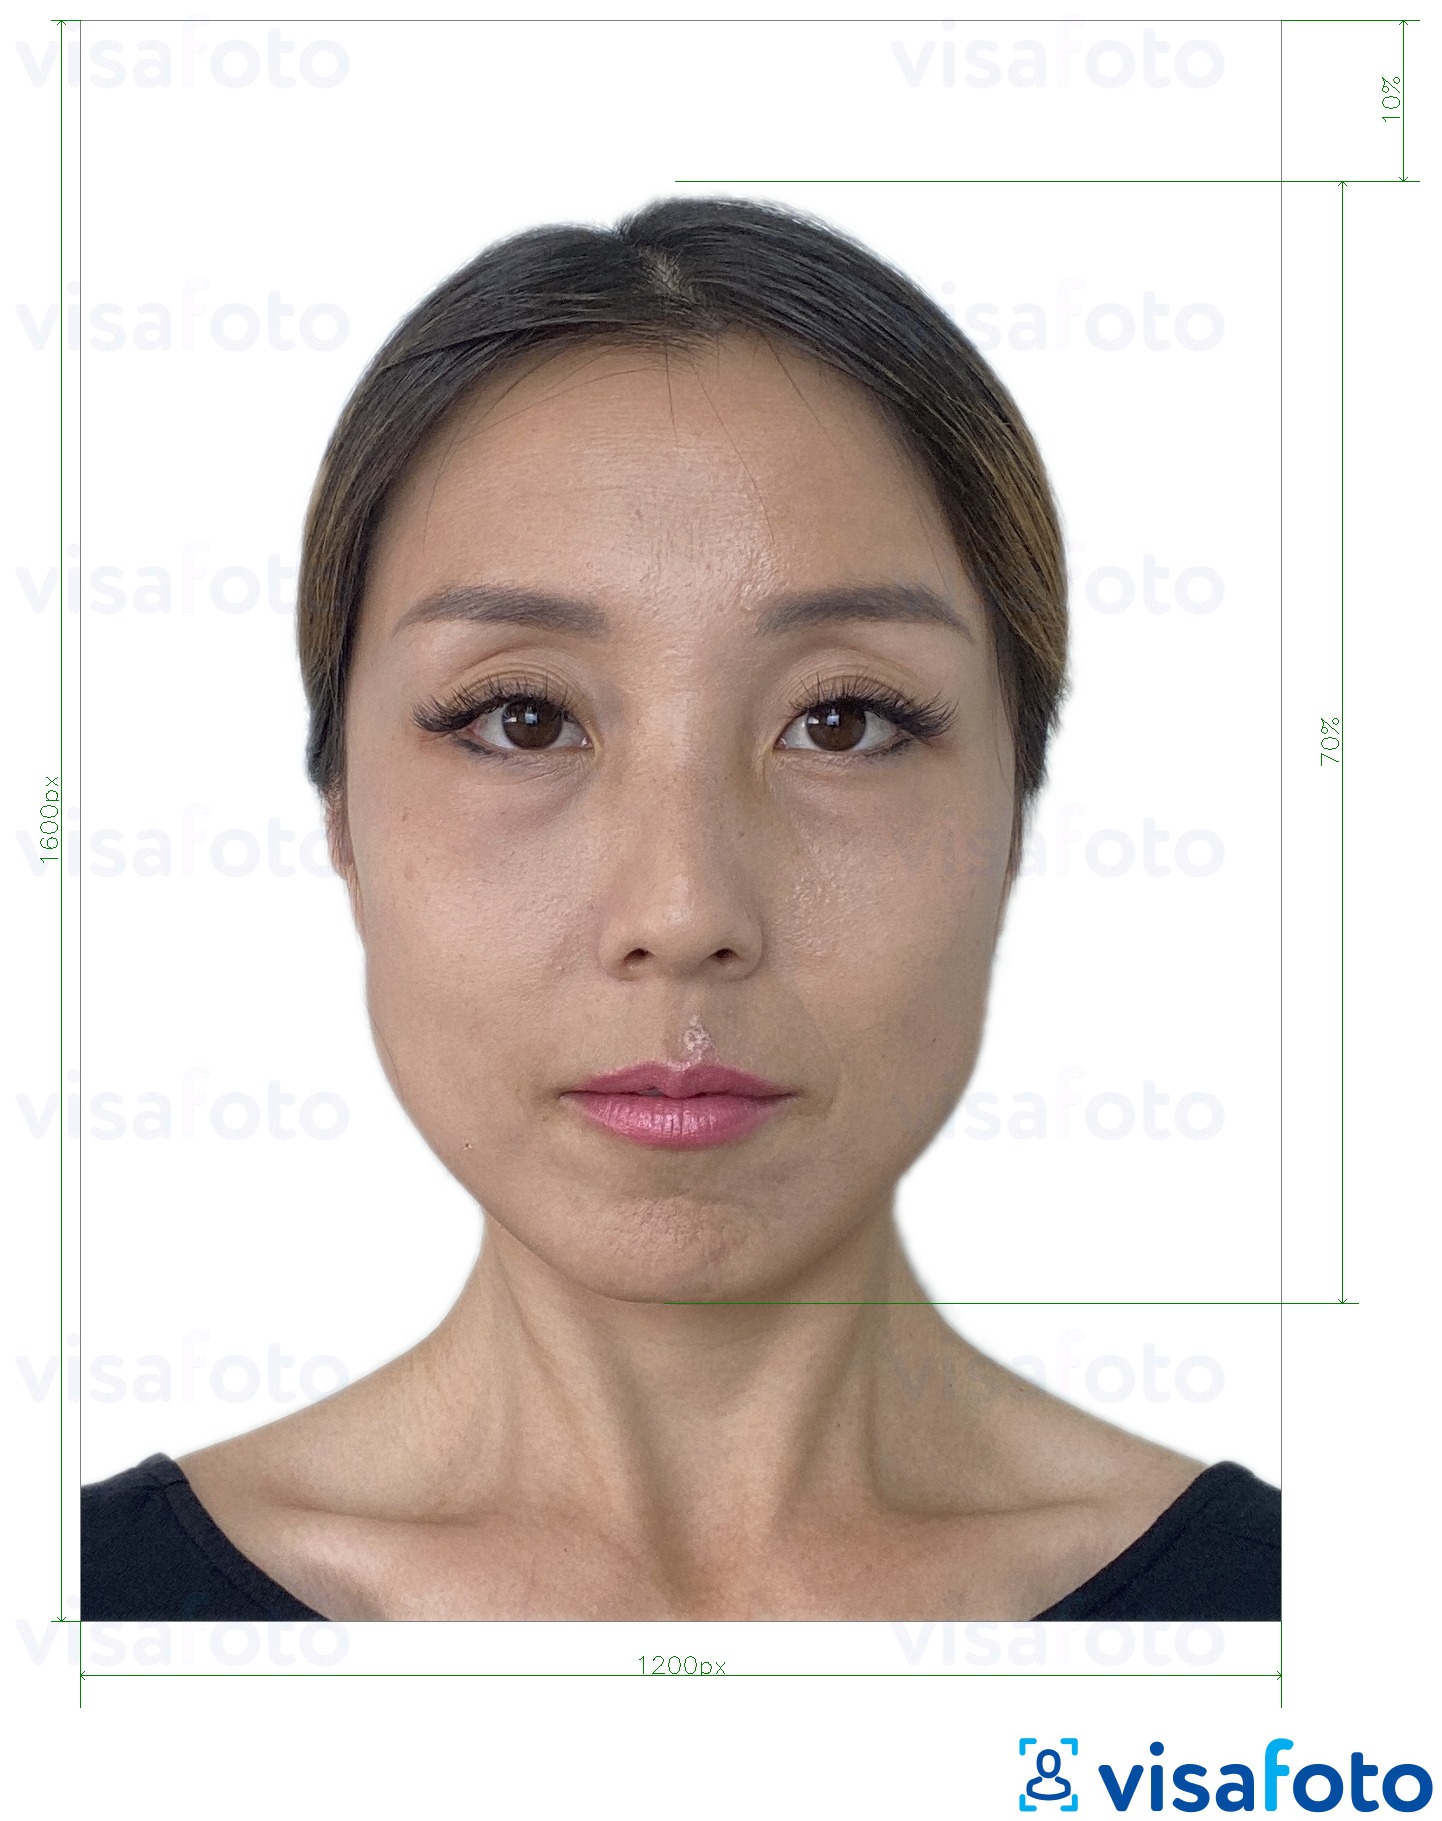 Esempio di foto per E-visa online di Hong Kong 1200x1600 pixel con specifiche delle dimensioni esatte